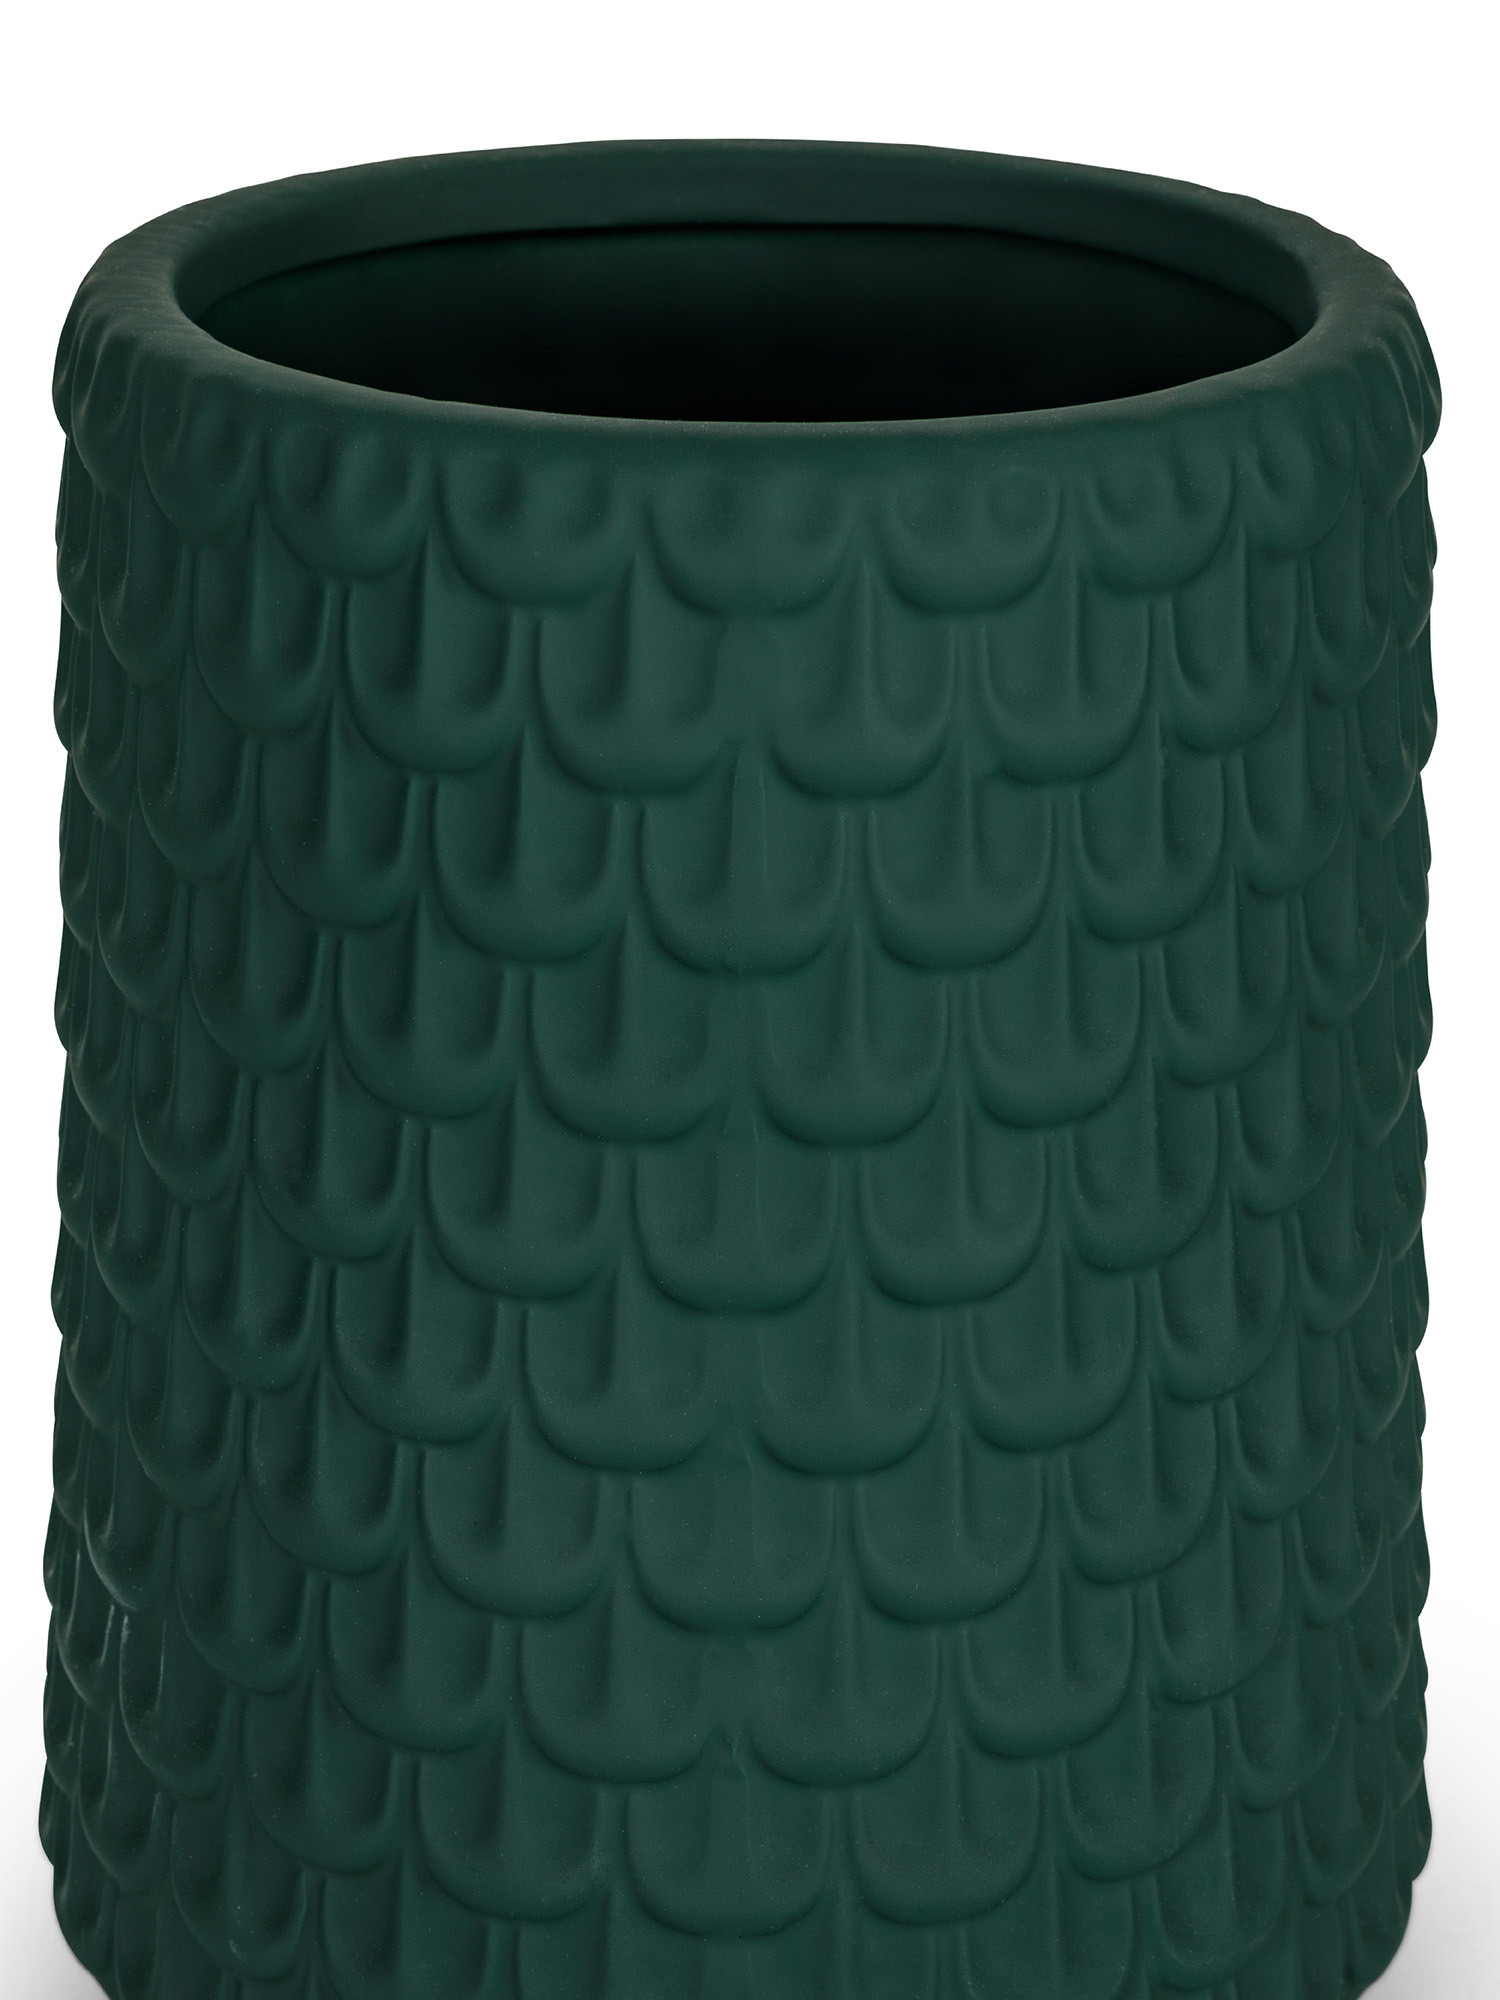 Ceramic vase, Green, large image number 1